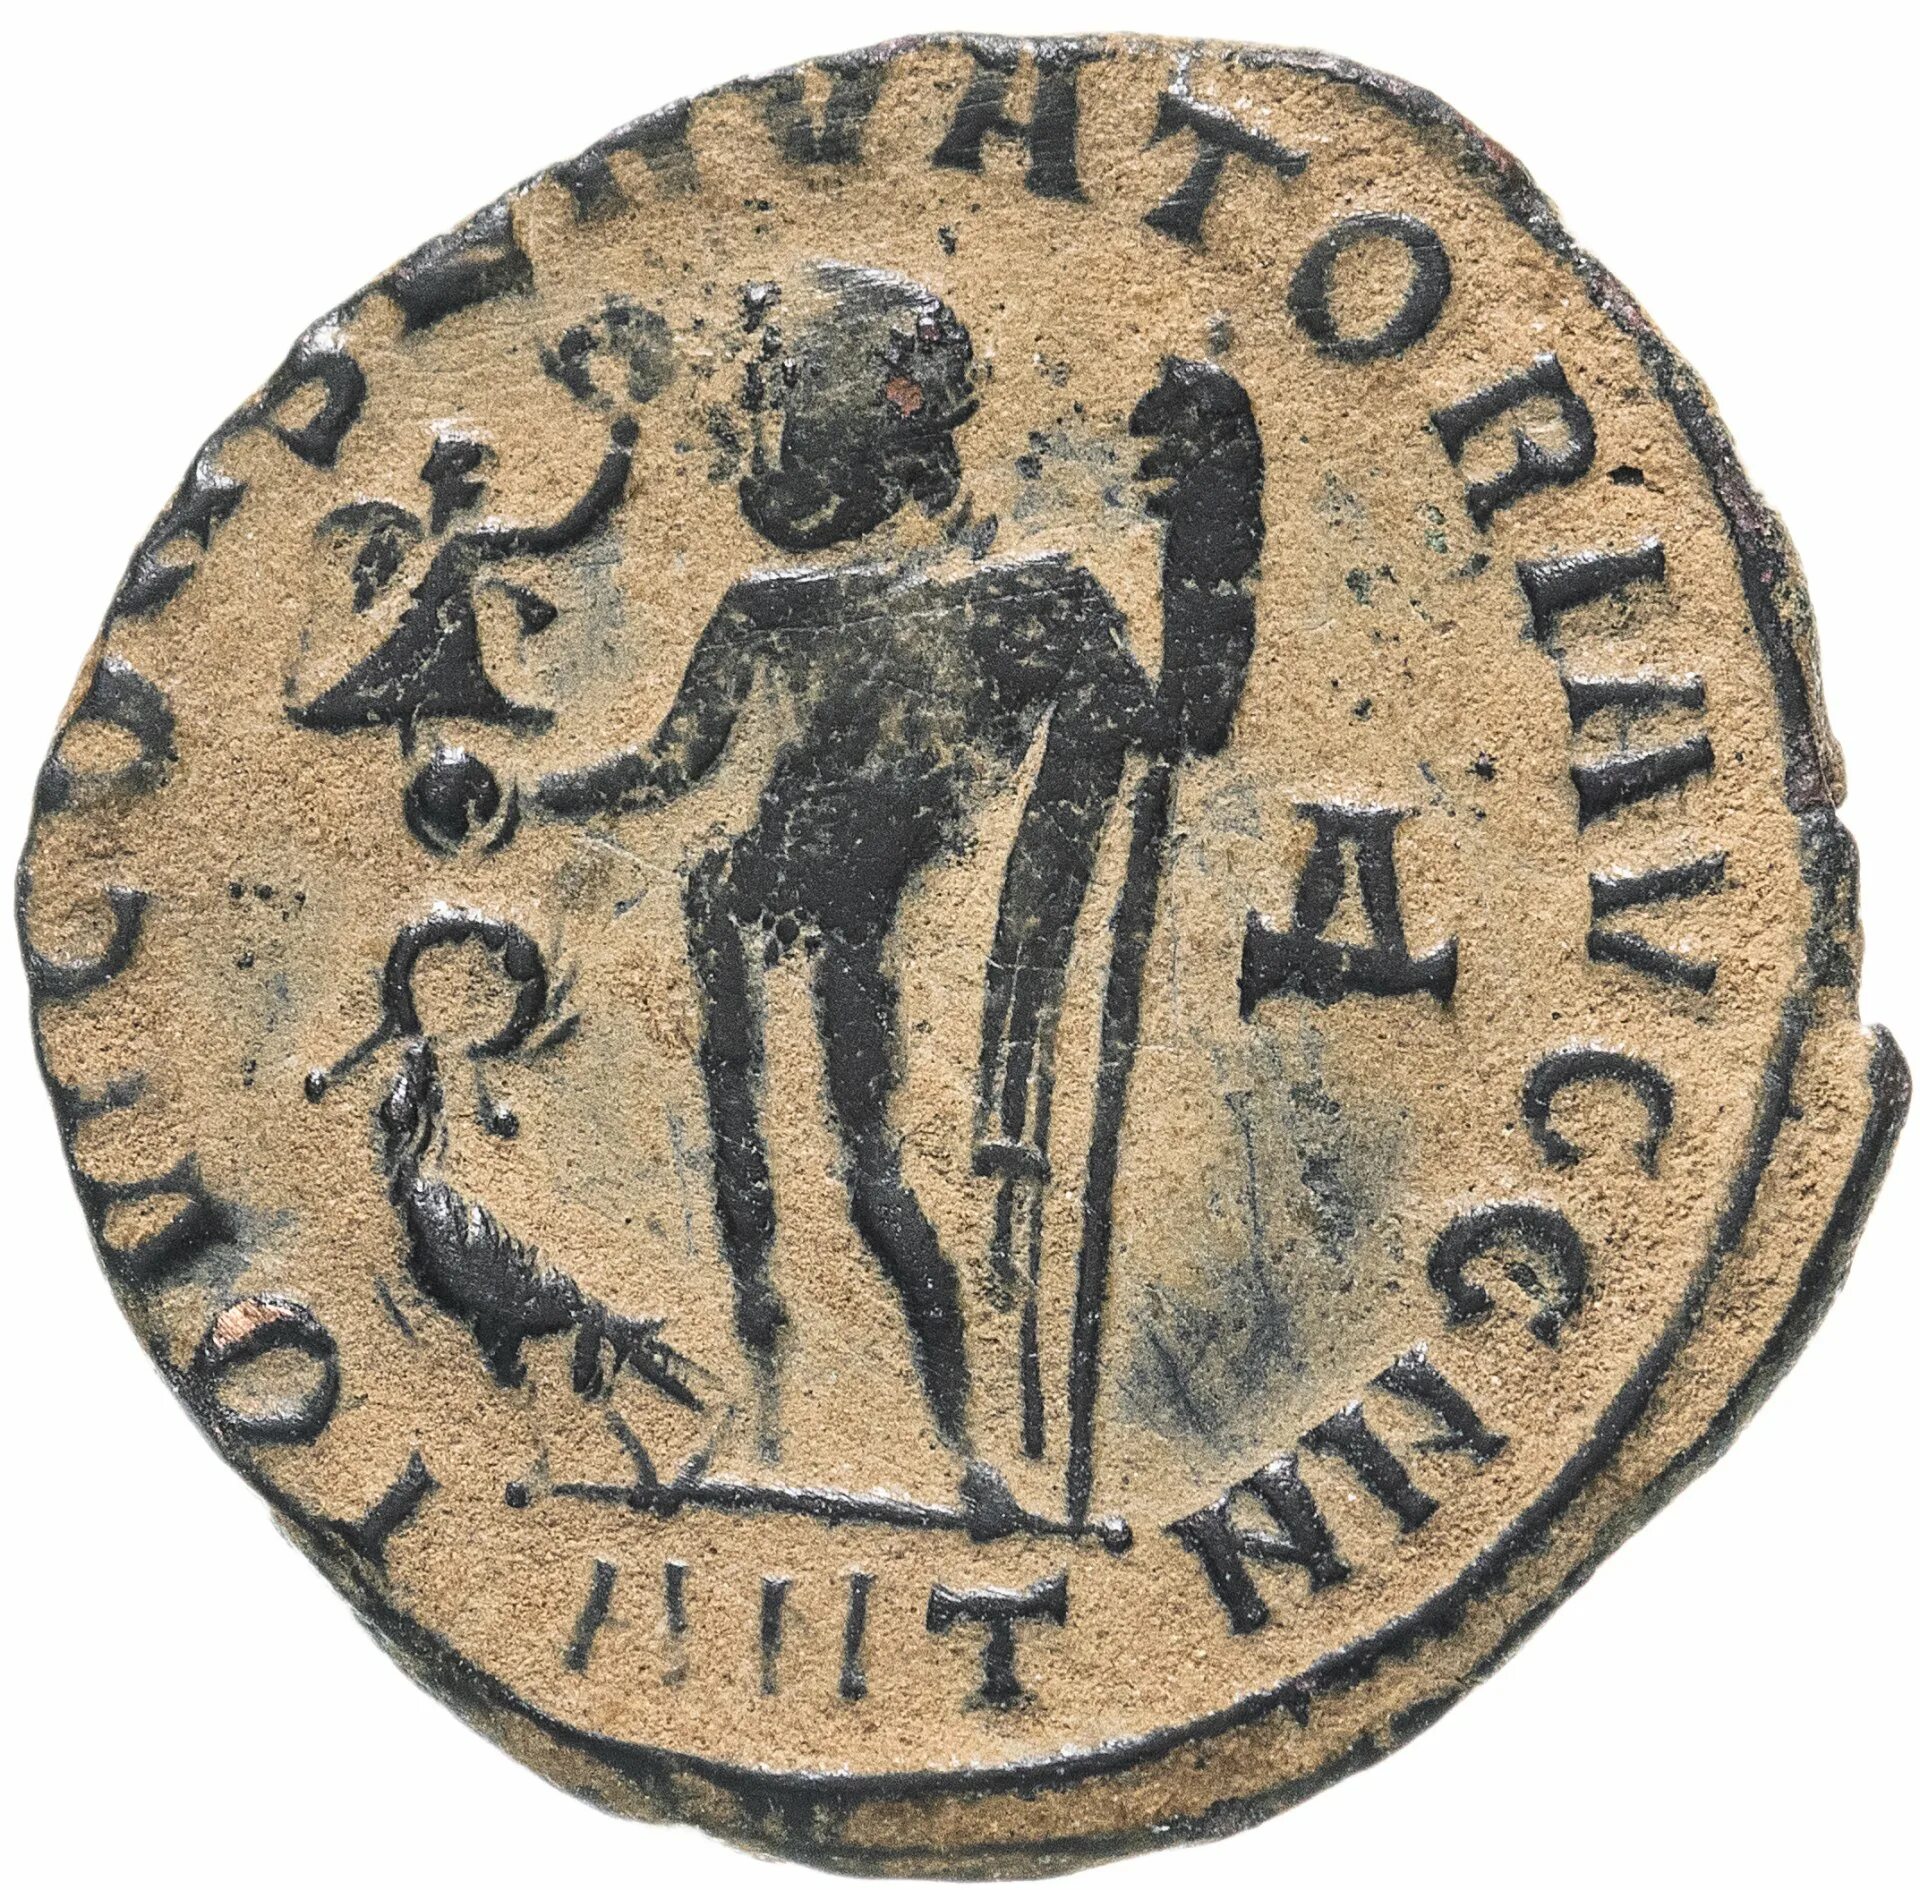 Римская Империя нуммий. Римская монета Лициний 308-324 г. Древний Рим Лициний монета нуммий. Монеты из меди в древности.